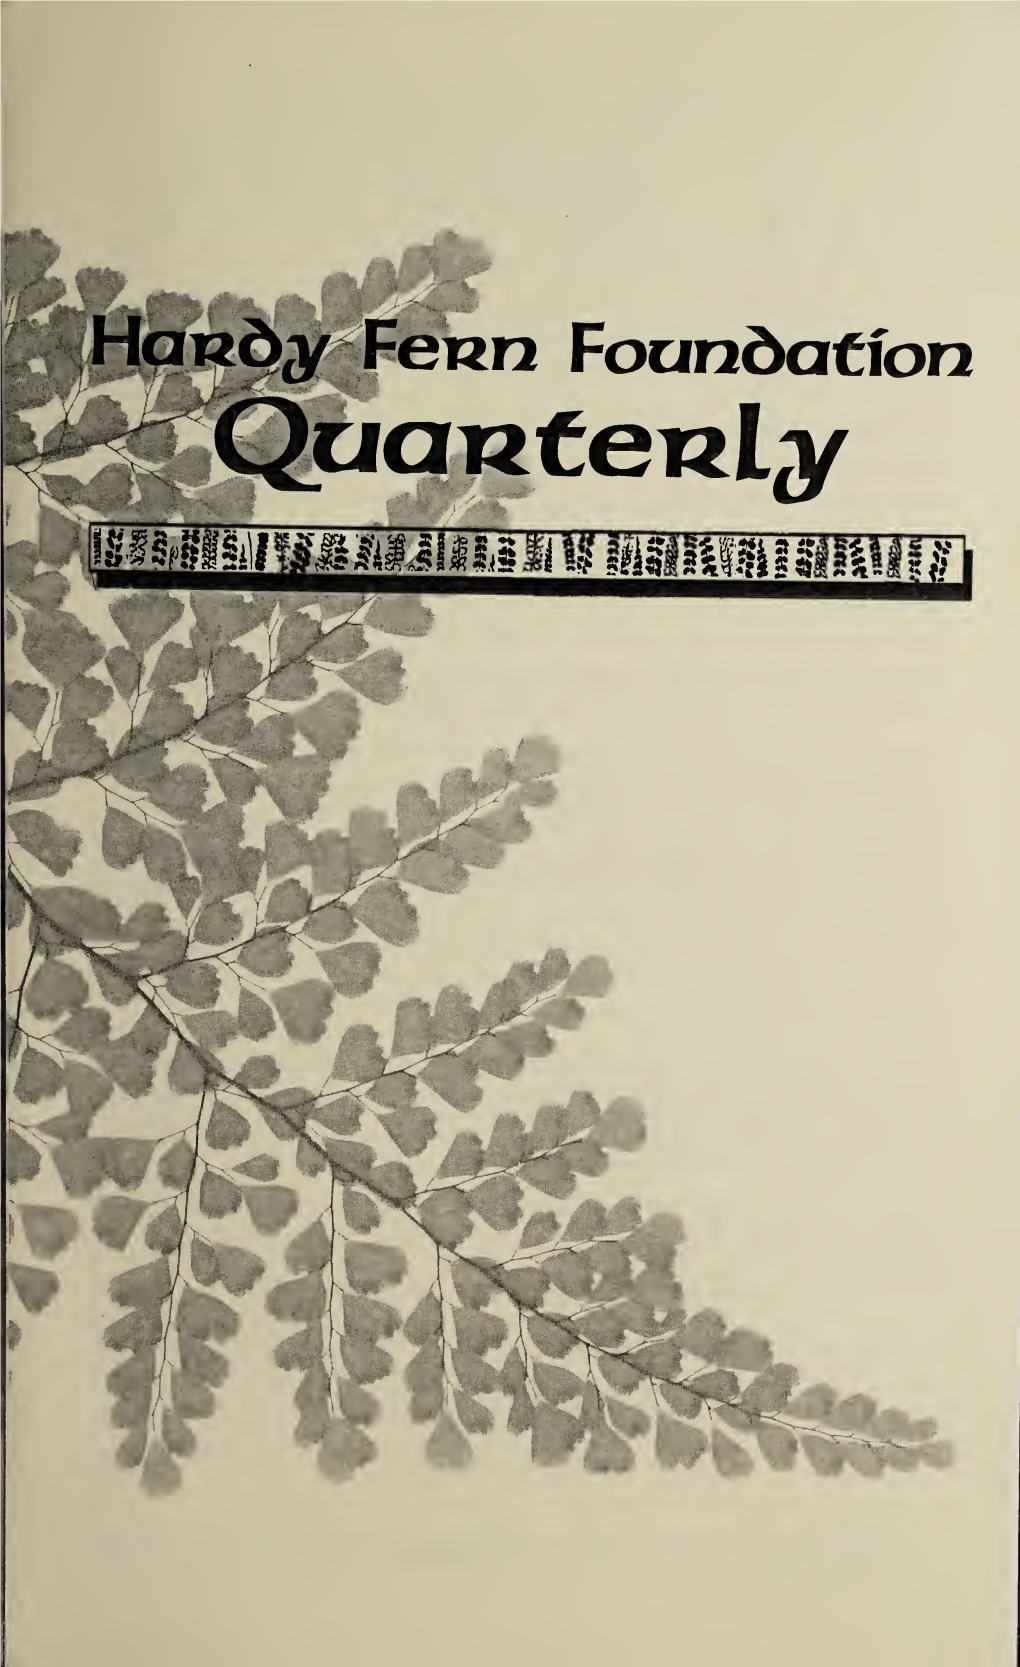 HARDY FERN FOUNDATION QUARTERLY the HARDY FERN FOUNDATION QUARTERLY Volume 15 • No